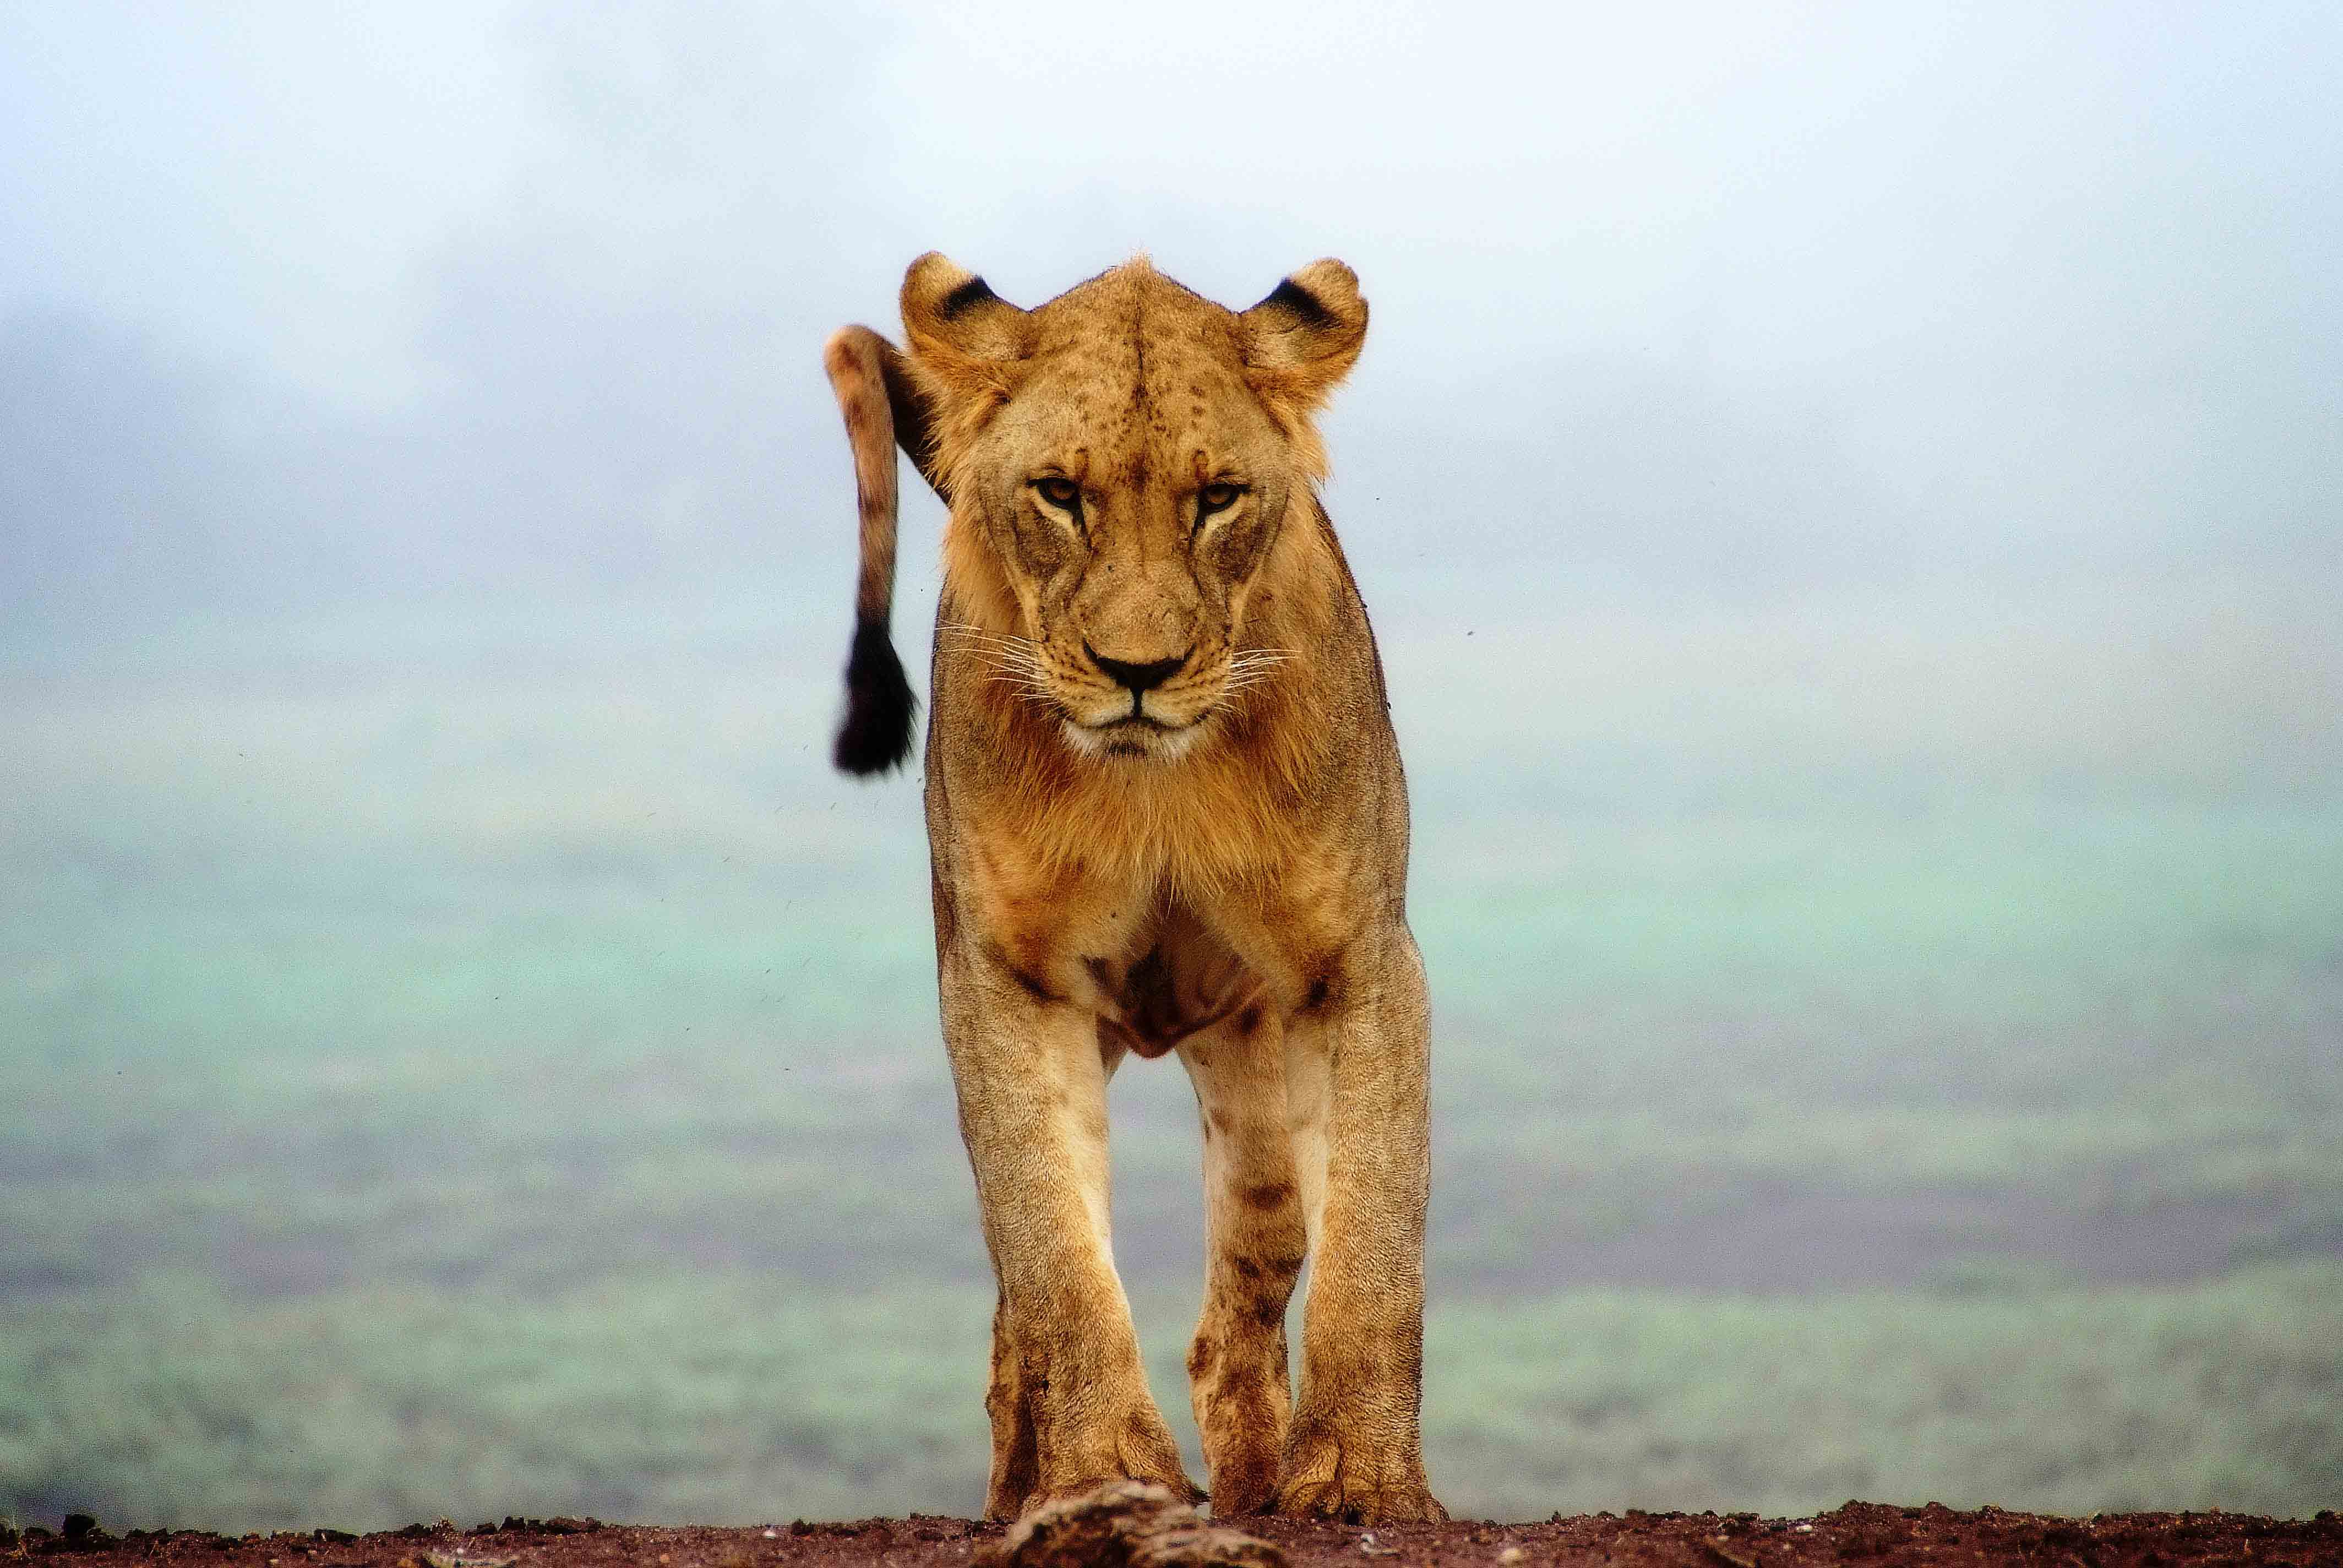 Des lions enfermés et élevés pour être chassés par de riches touristes Image-90-1